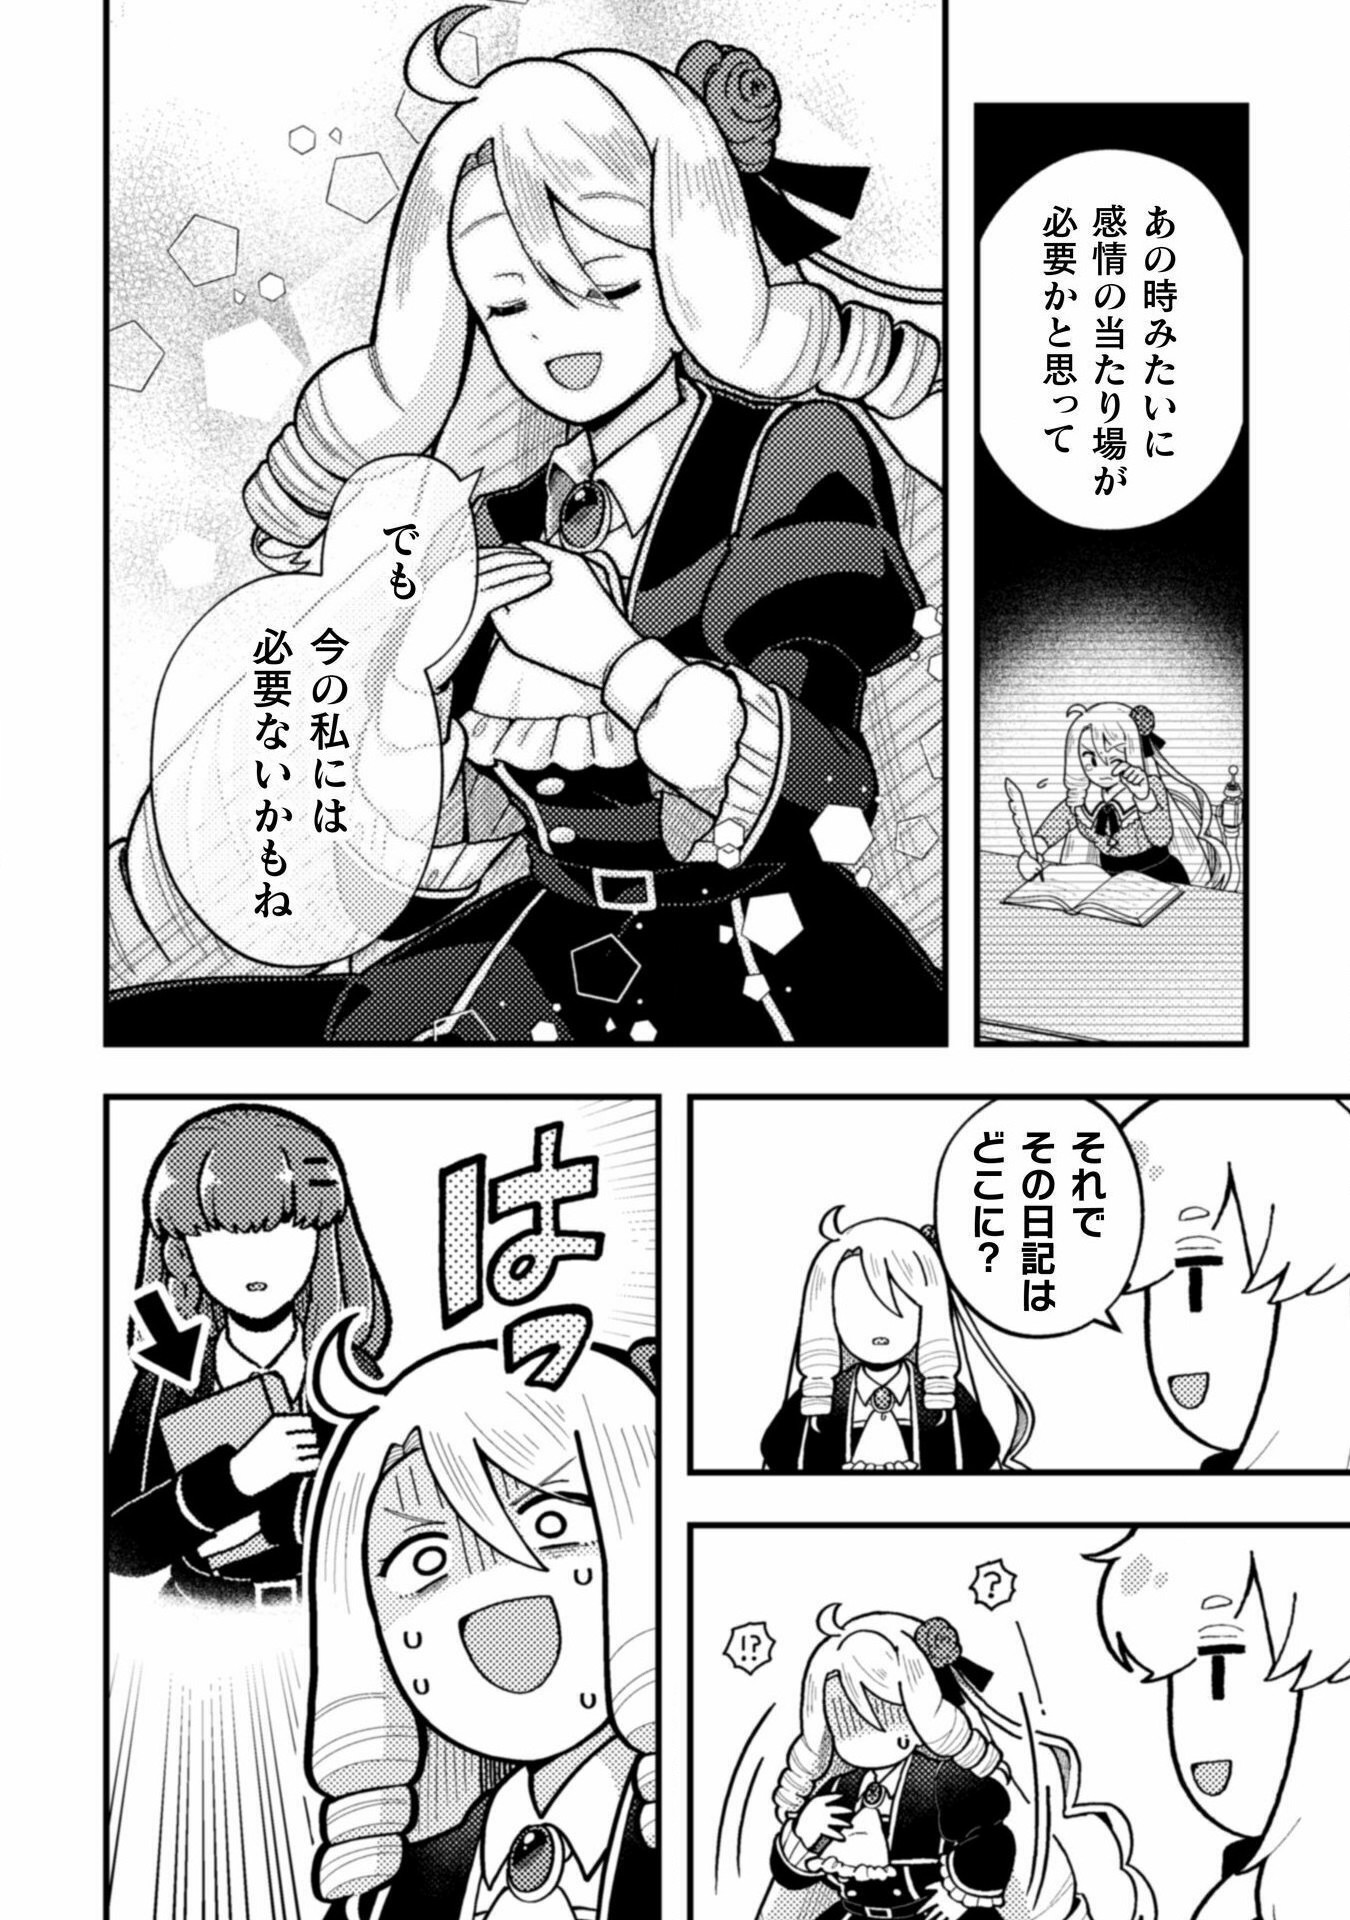 Otome Game no Akuyaku Reijou ni Tensei shitakedo Follower ga Fukyoushiteta Chisiki shikanai - Chapter 21 - Page 22